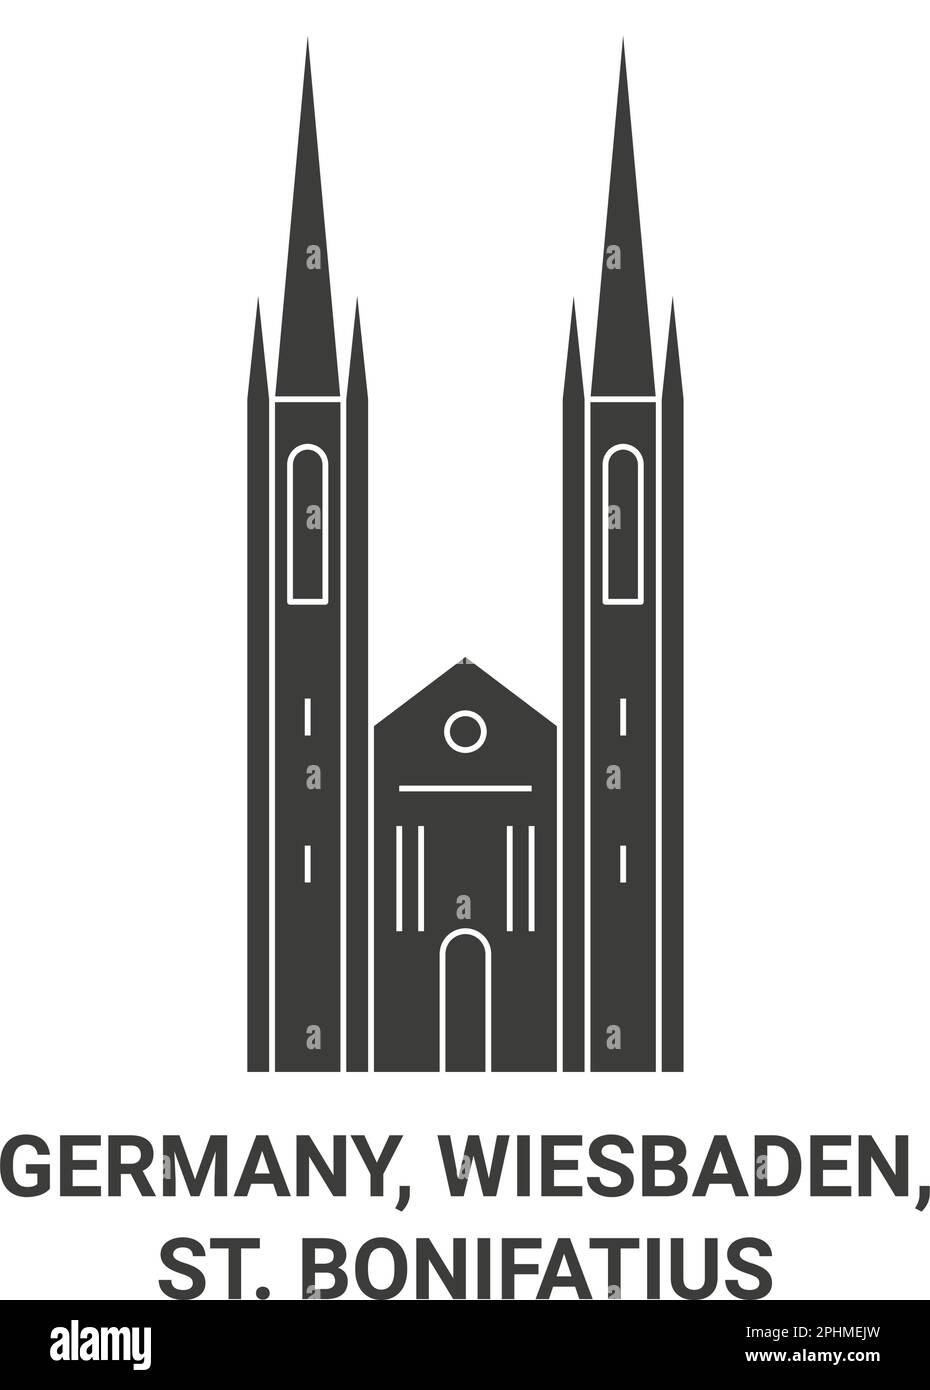 Alemania, Wiesbaden, St. Bonifatius viaje hito ilustración vectorial Ilustración del Vector